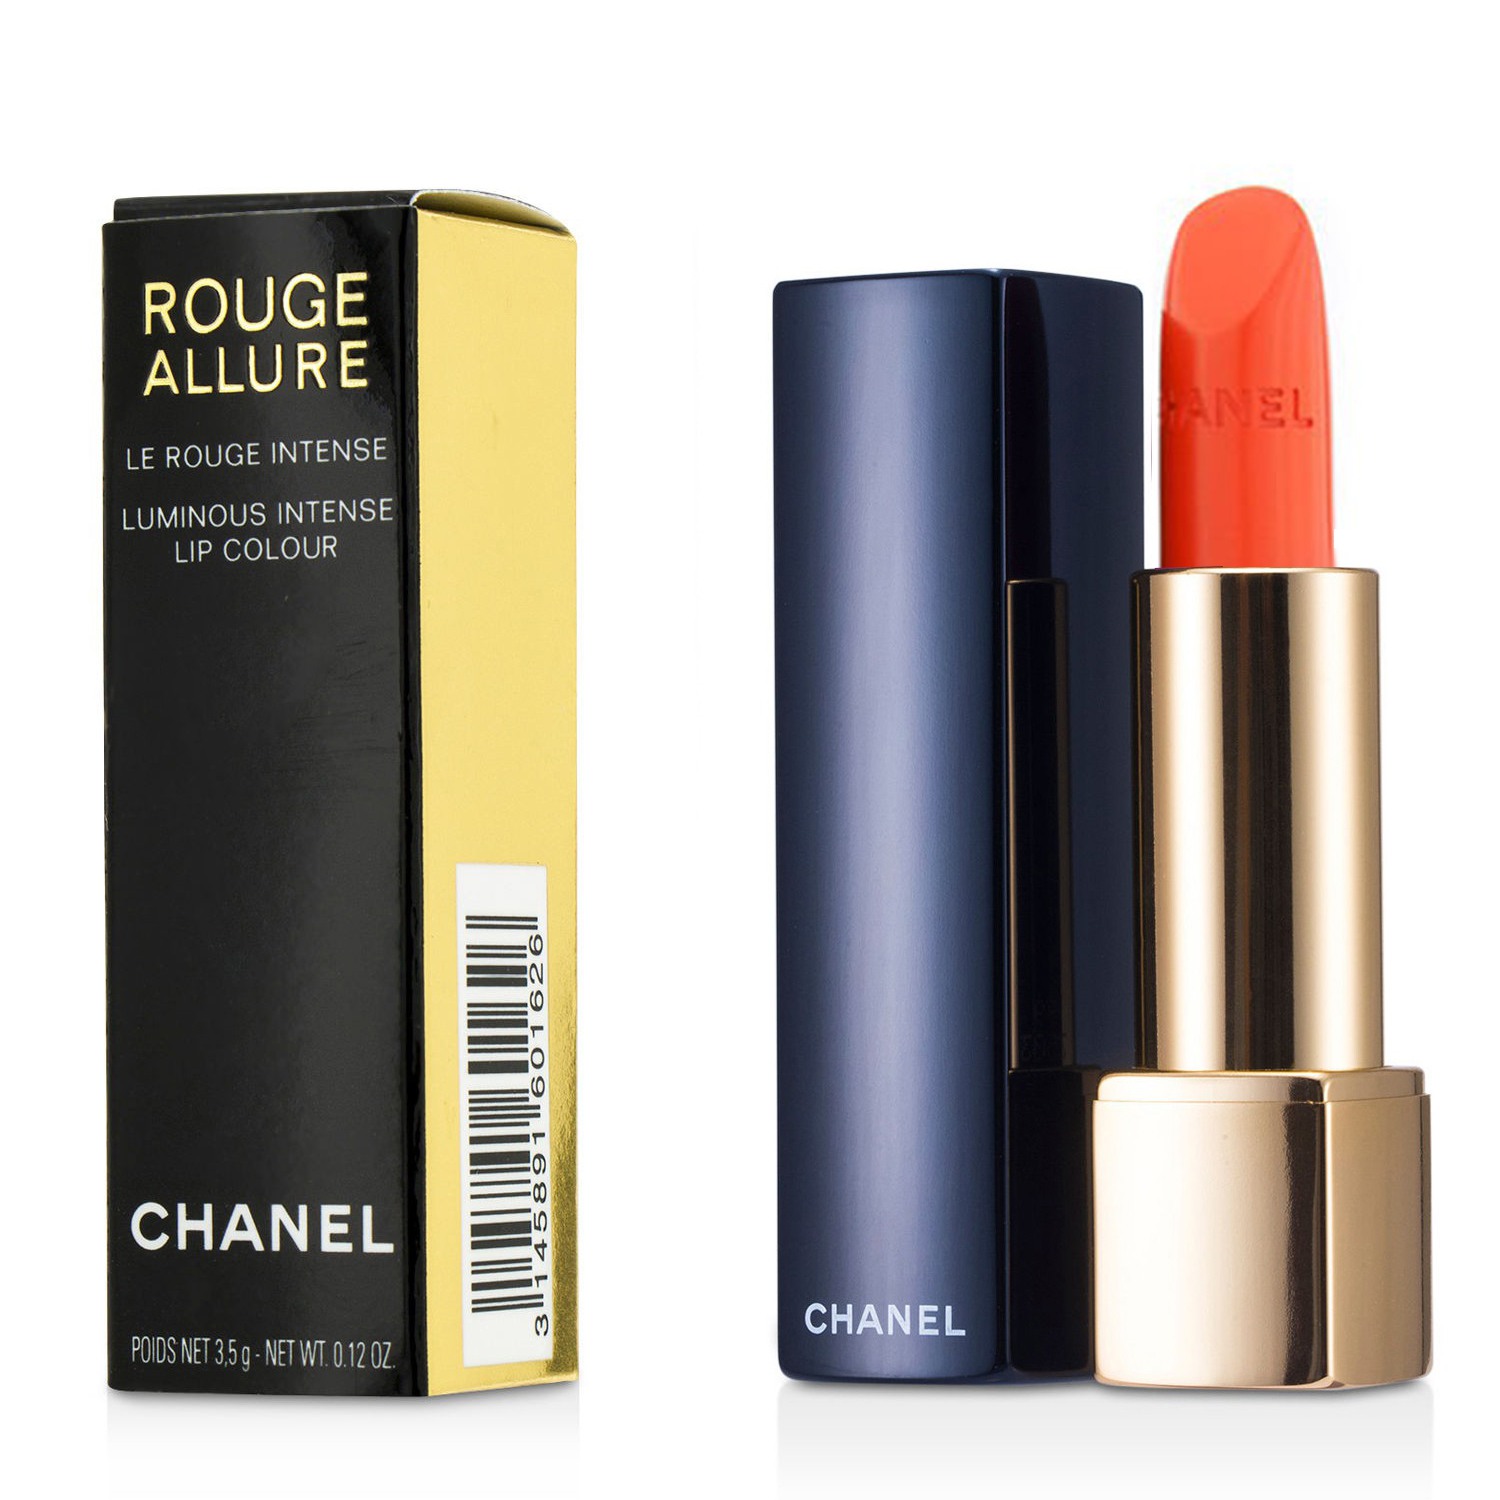 Chanel Rouge Allure Luminous Intense Lip Colour, Excentrique 96 - 0.12 oz tube